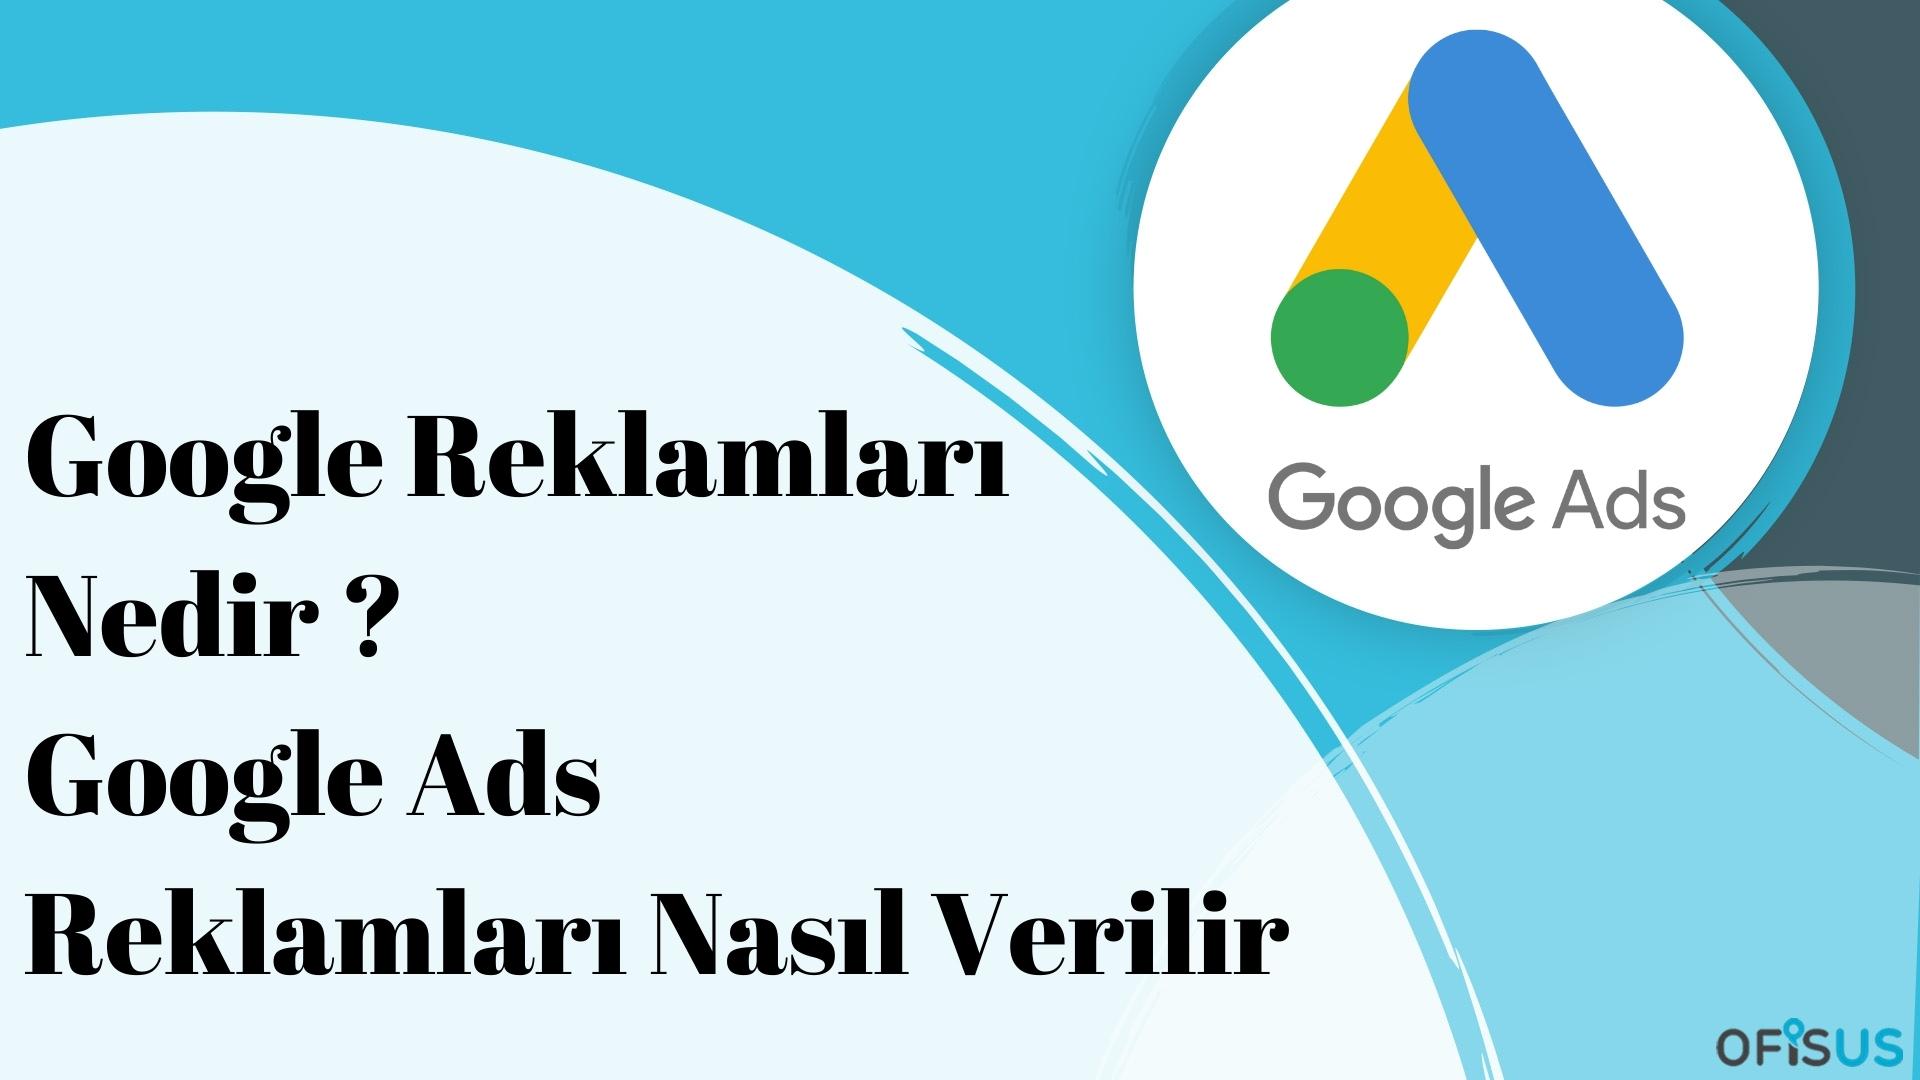 Ofisus Danışmanlık - Google Reklamları Nedir ? Google Ads Reklamları Nasıl Verilir?